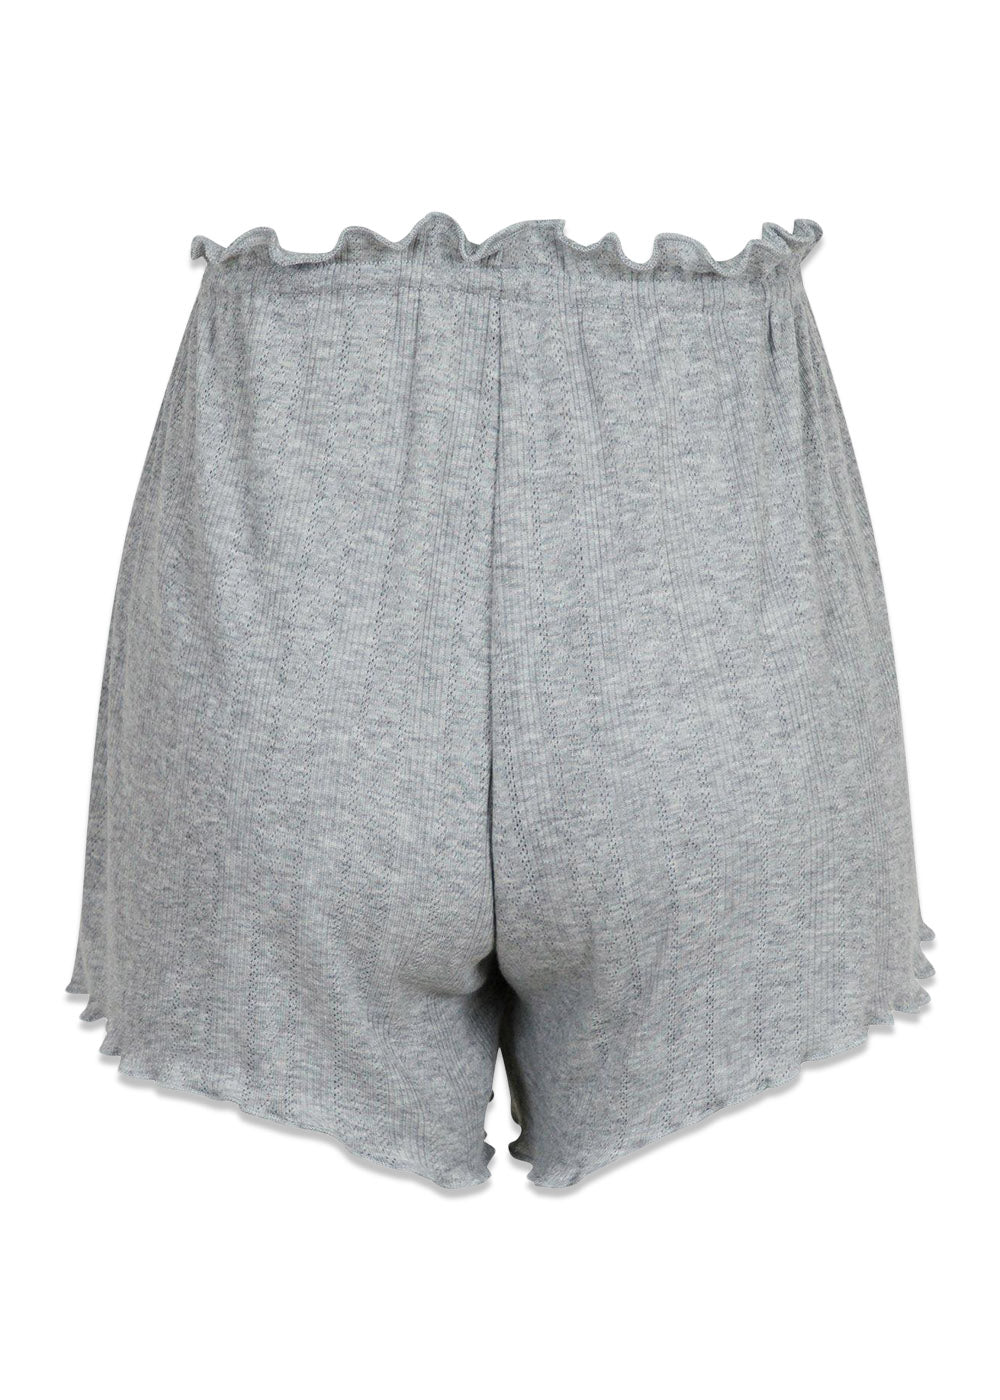 Merritt Pointelle Shorts - Light Grey